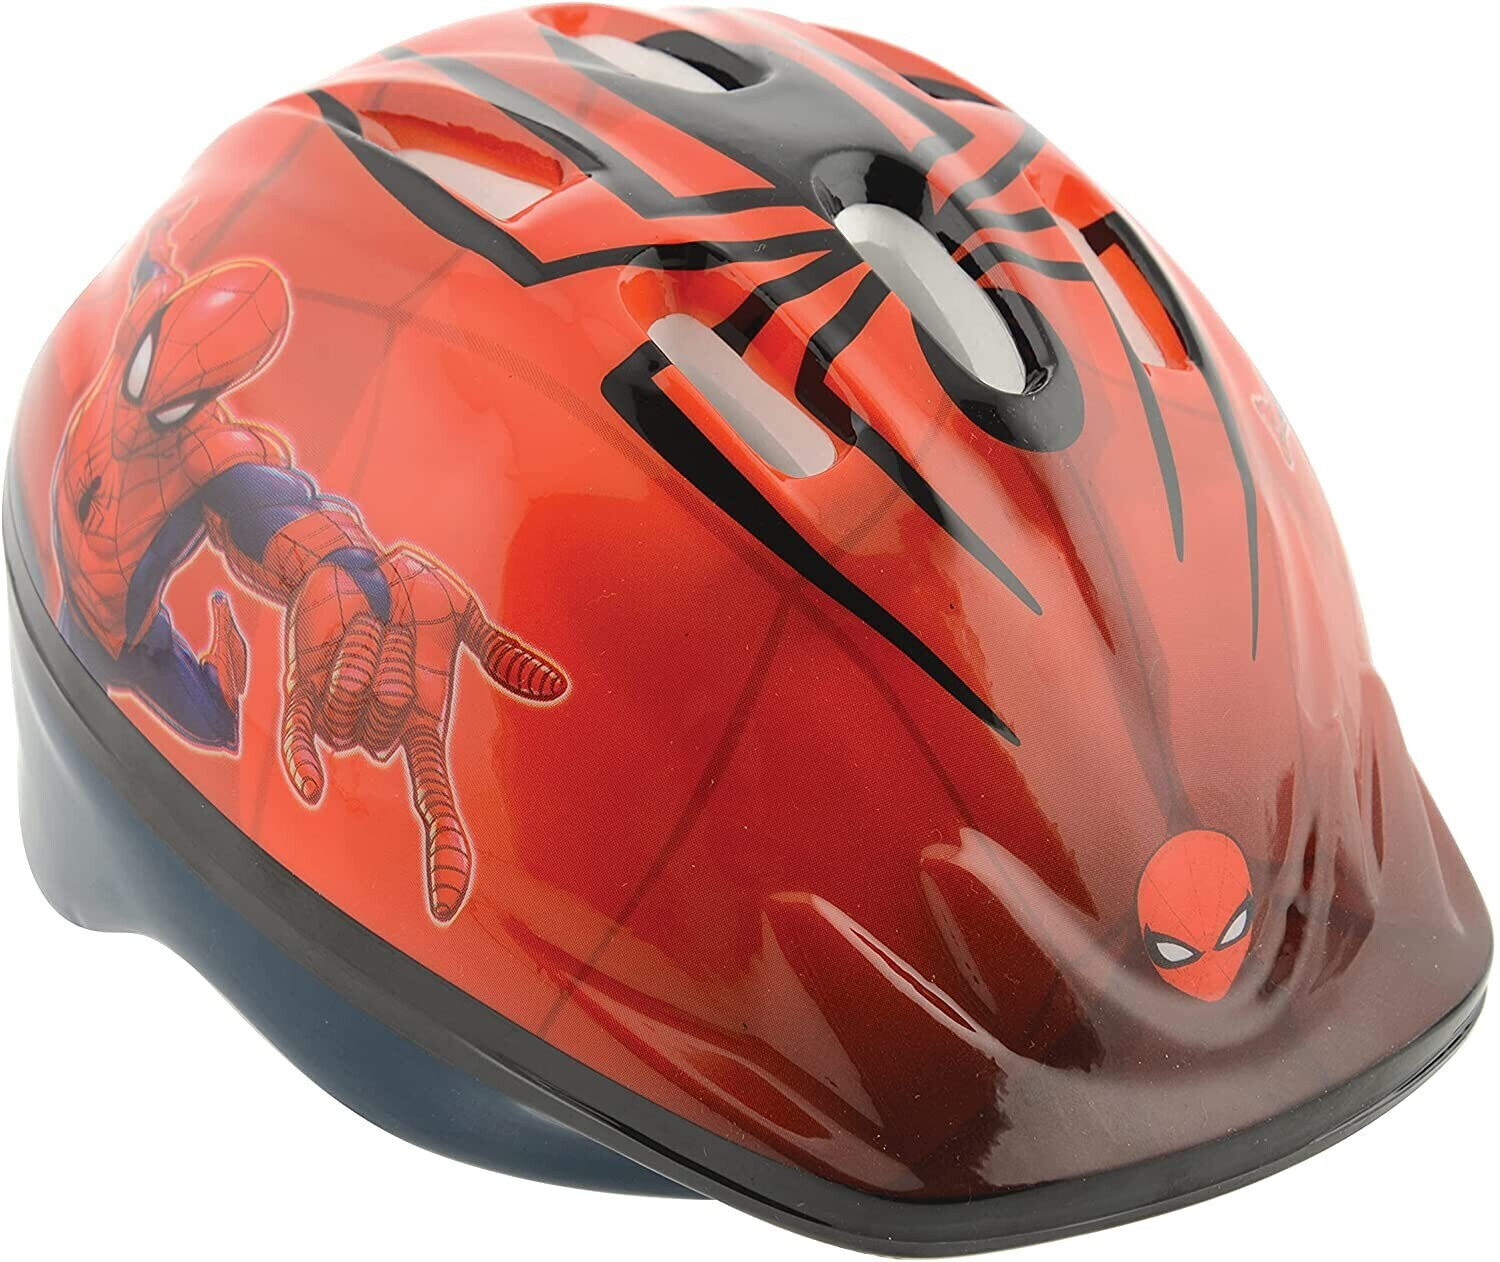 Photos - Bike Helmet Spiderman by FLA Europe Spider Man Spiderman Safety Helmet - 48-52cm